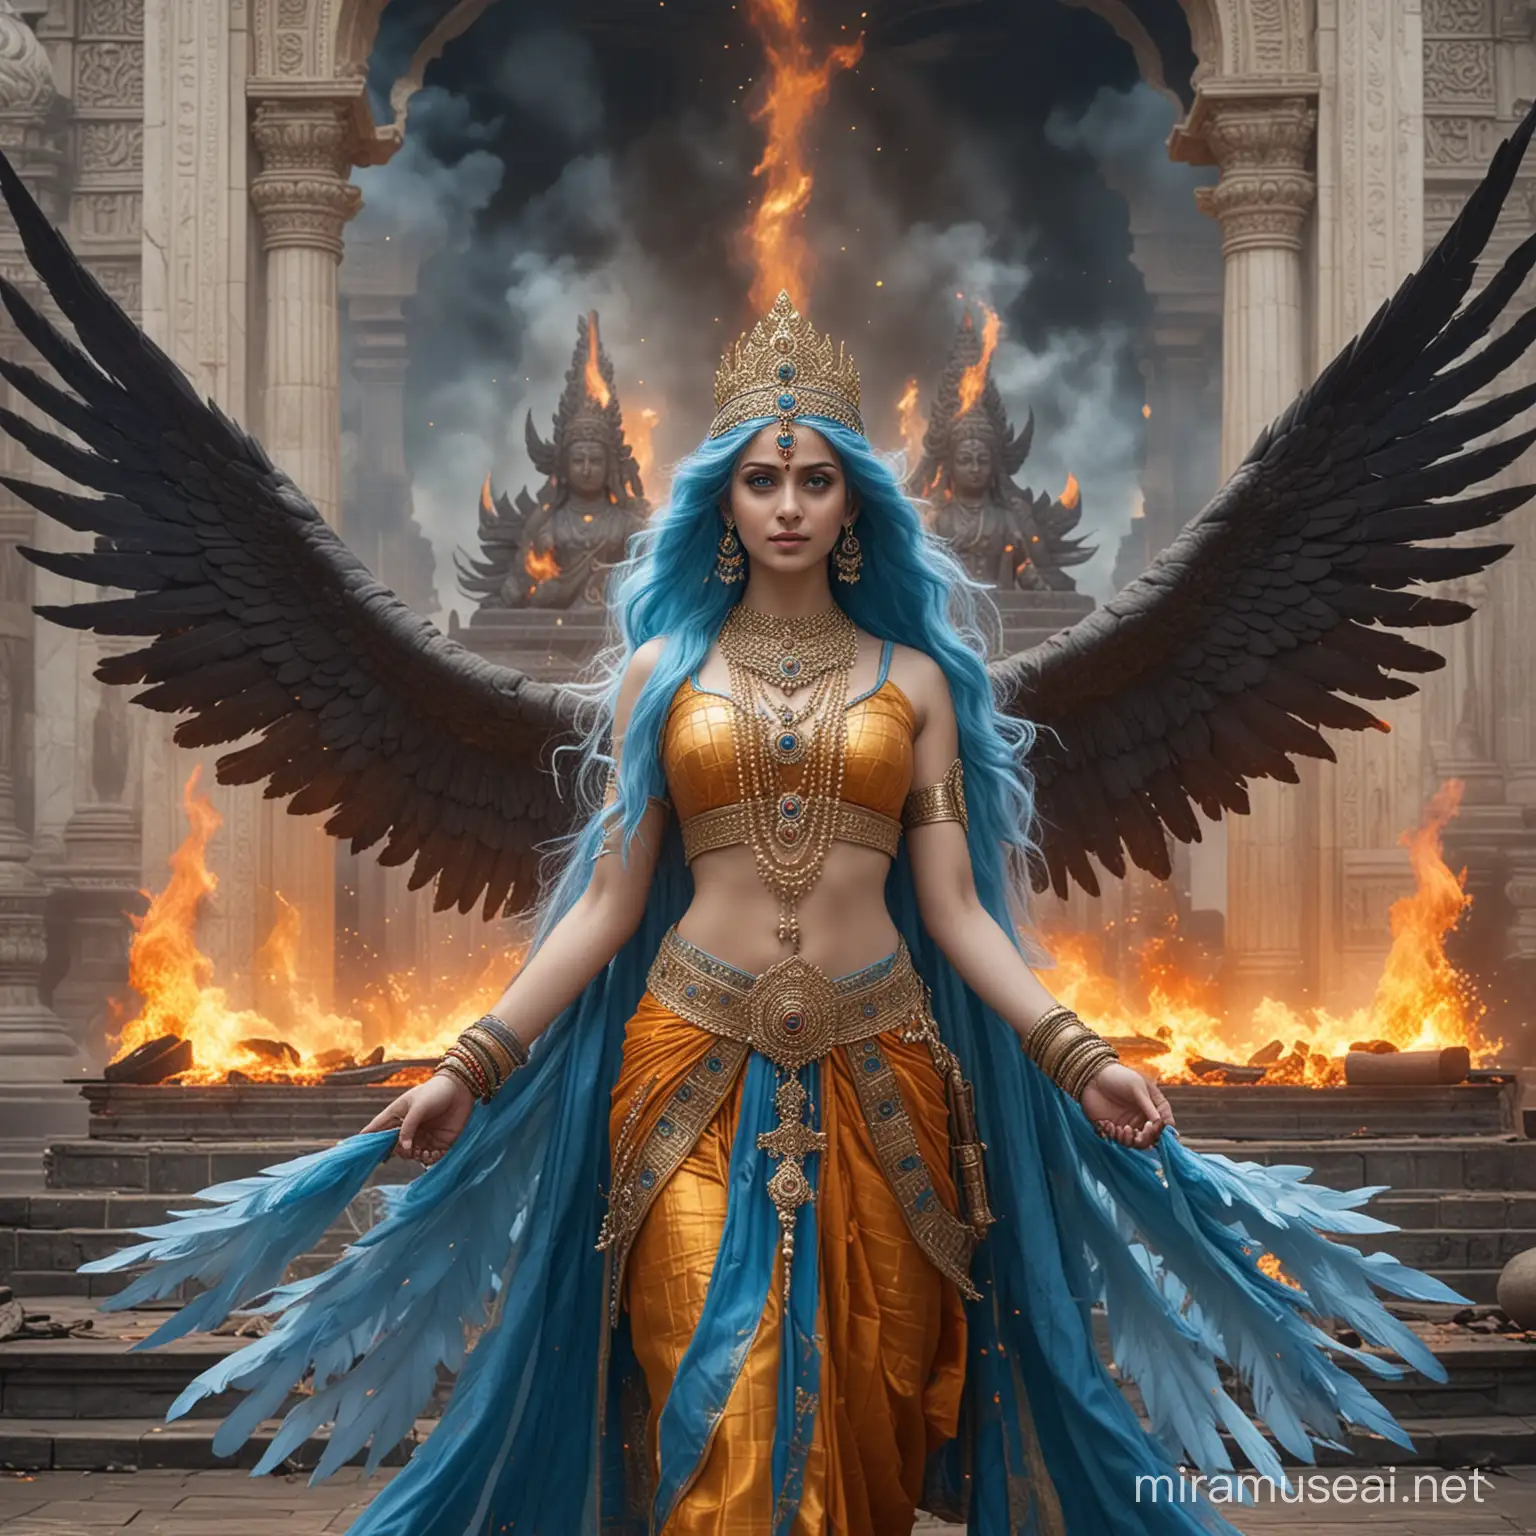 Diosa emperatriz hermosa joven de cabellos azules largos y ojos azules vestida como Diosa emperatriz hindu en combate, con muchas alas grandes largas,  rodeada de fuego y poder ,de pie junto a un altar majestuosa. Sonrisa misteriosa y de fondo y alrededor diosas y dioses hindus adorandola  y de fondo un gigantesco palacio hindu tenebroso 